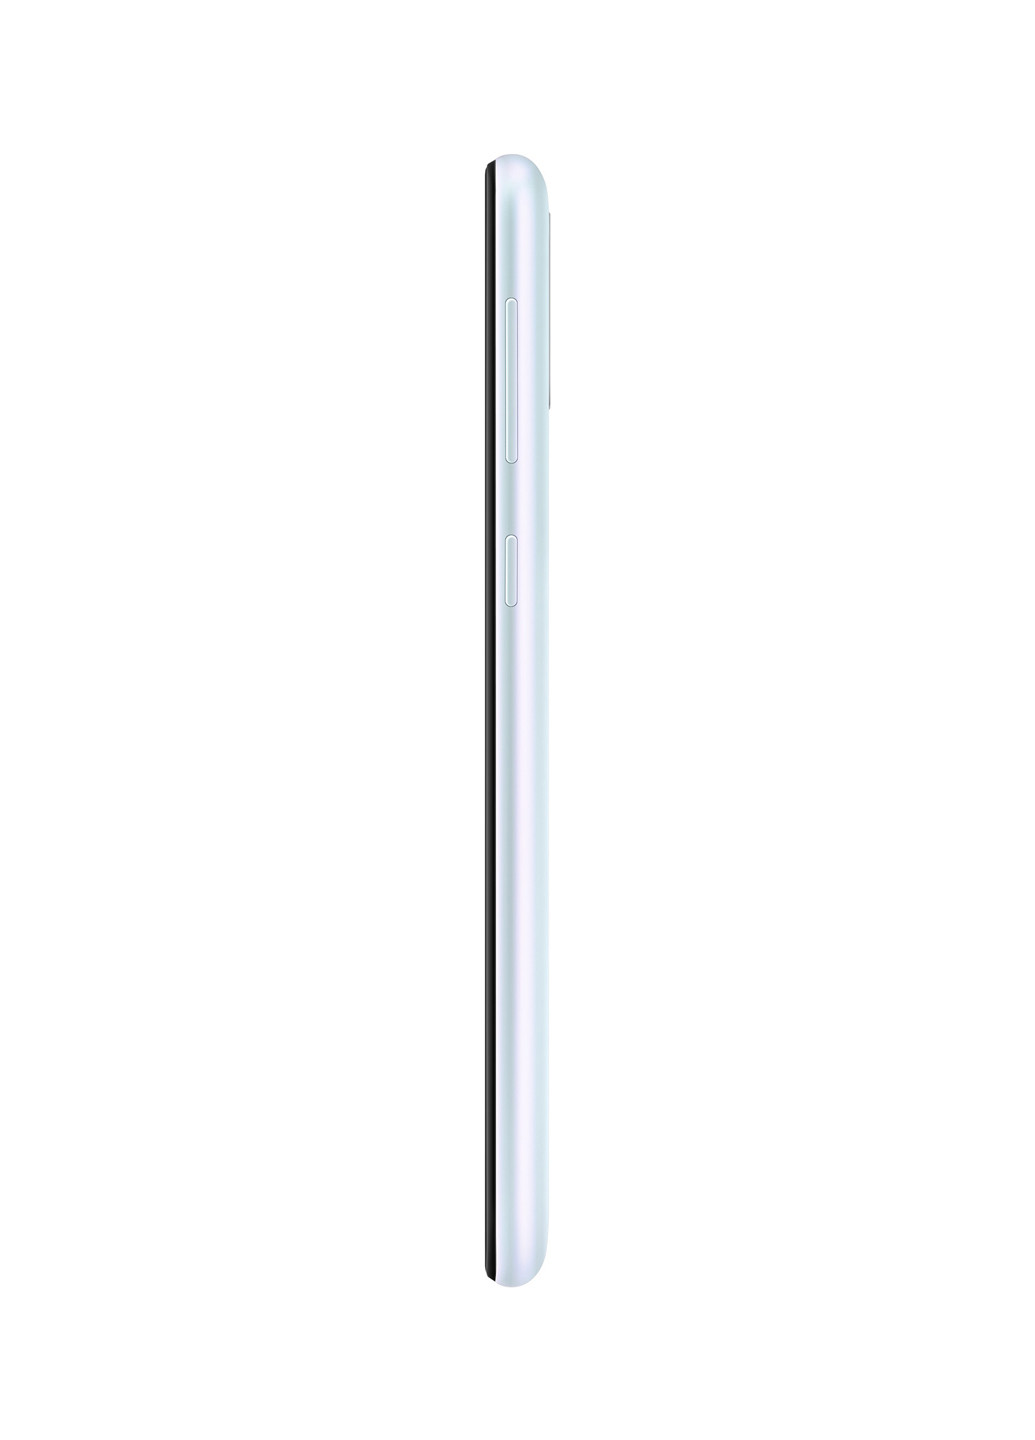 Смартфон Samsung Galaxy M30s 4/64GB Pearl White (SM-M307FZWUSEK) белый